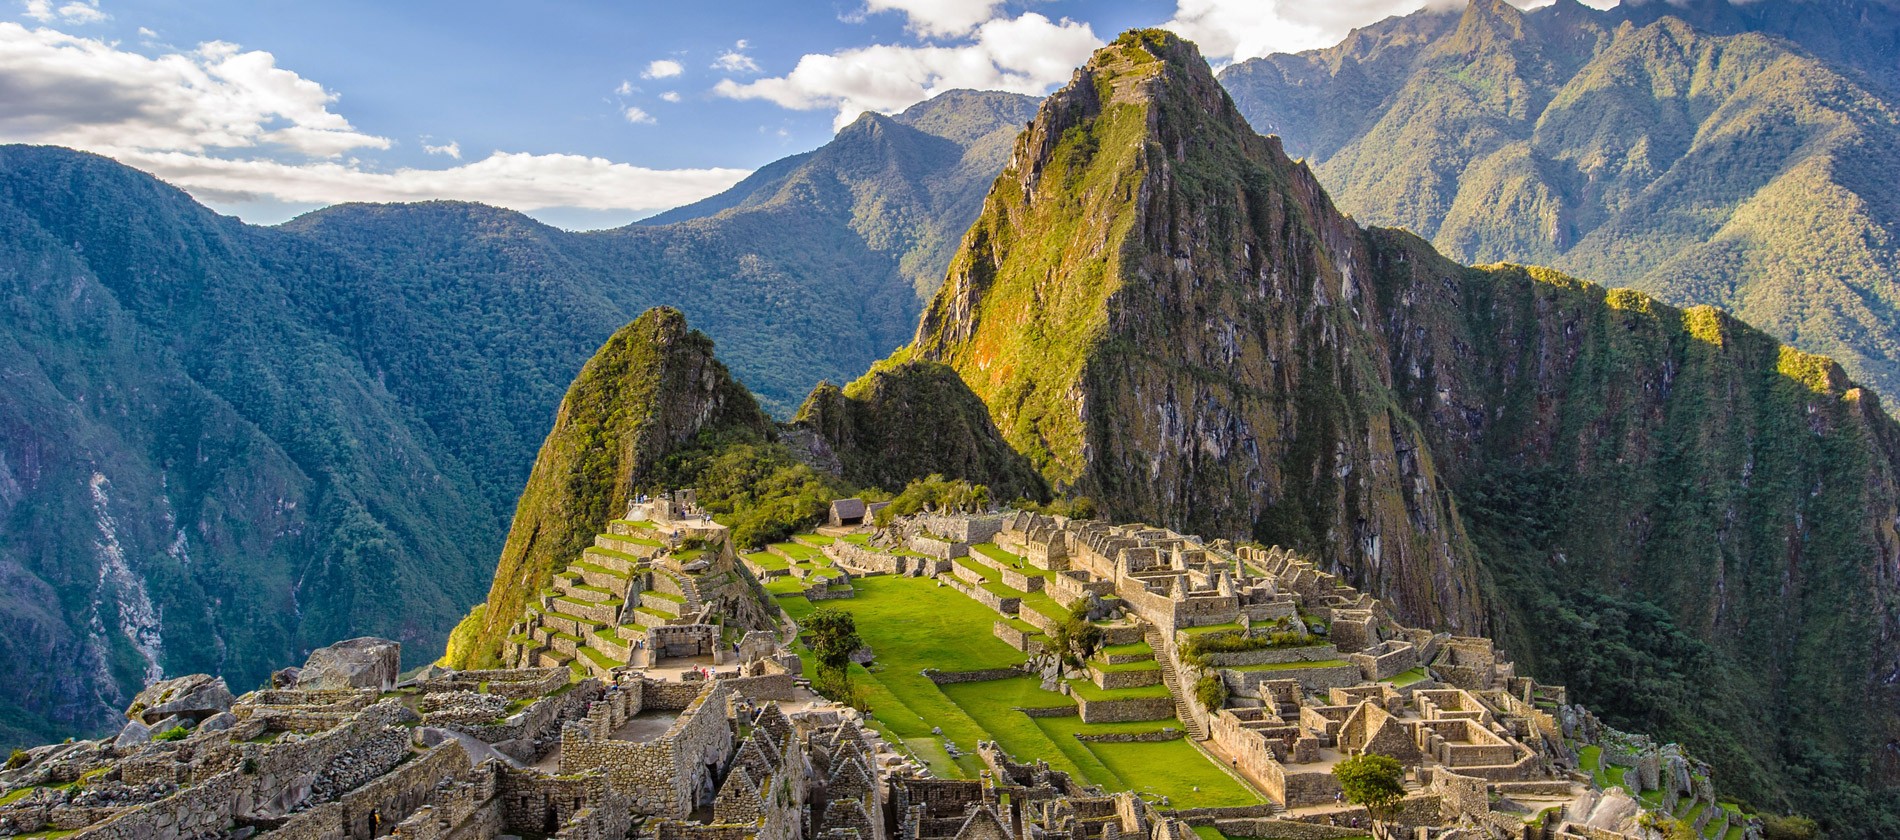 Machu Picchu - 3 Civilisations de Bâtisseurs? Machu-Picchu-Peru-shutterstock_147330281